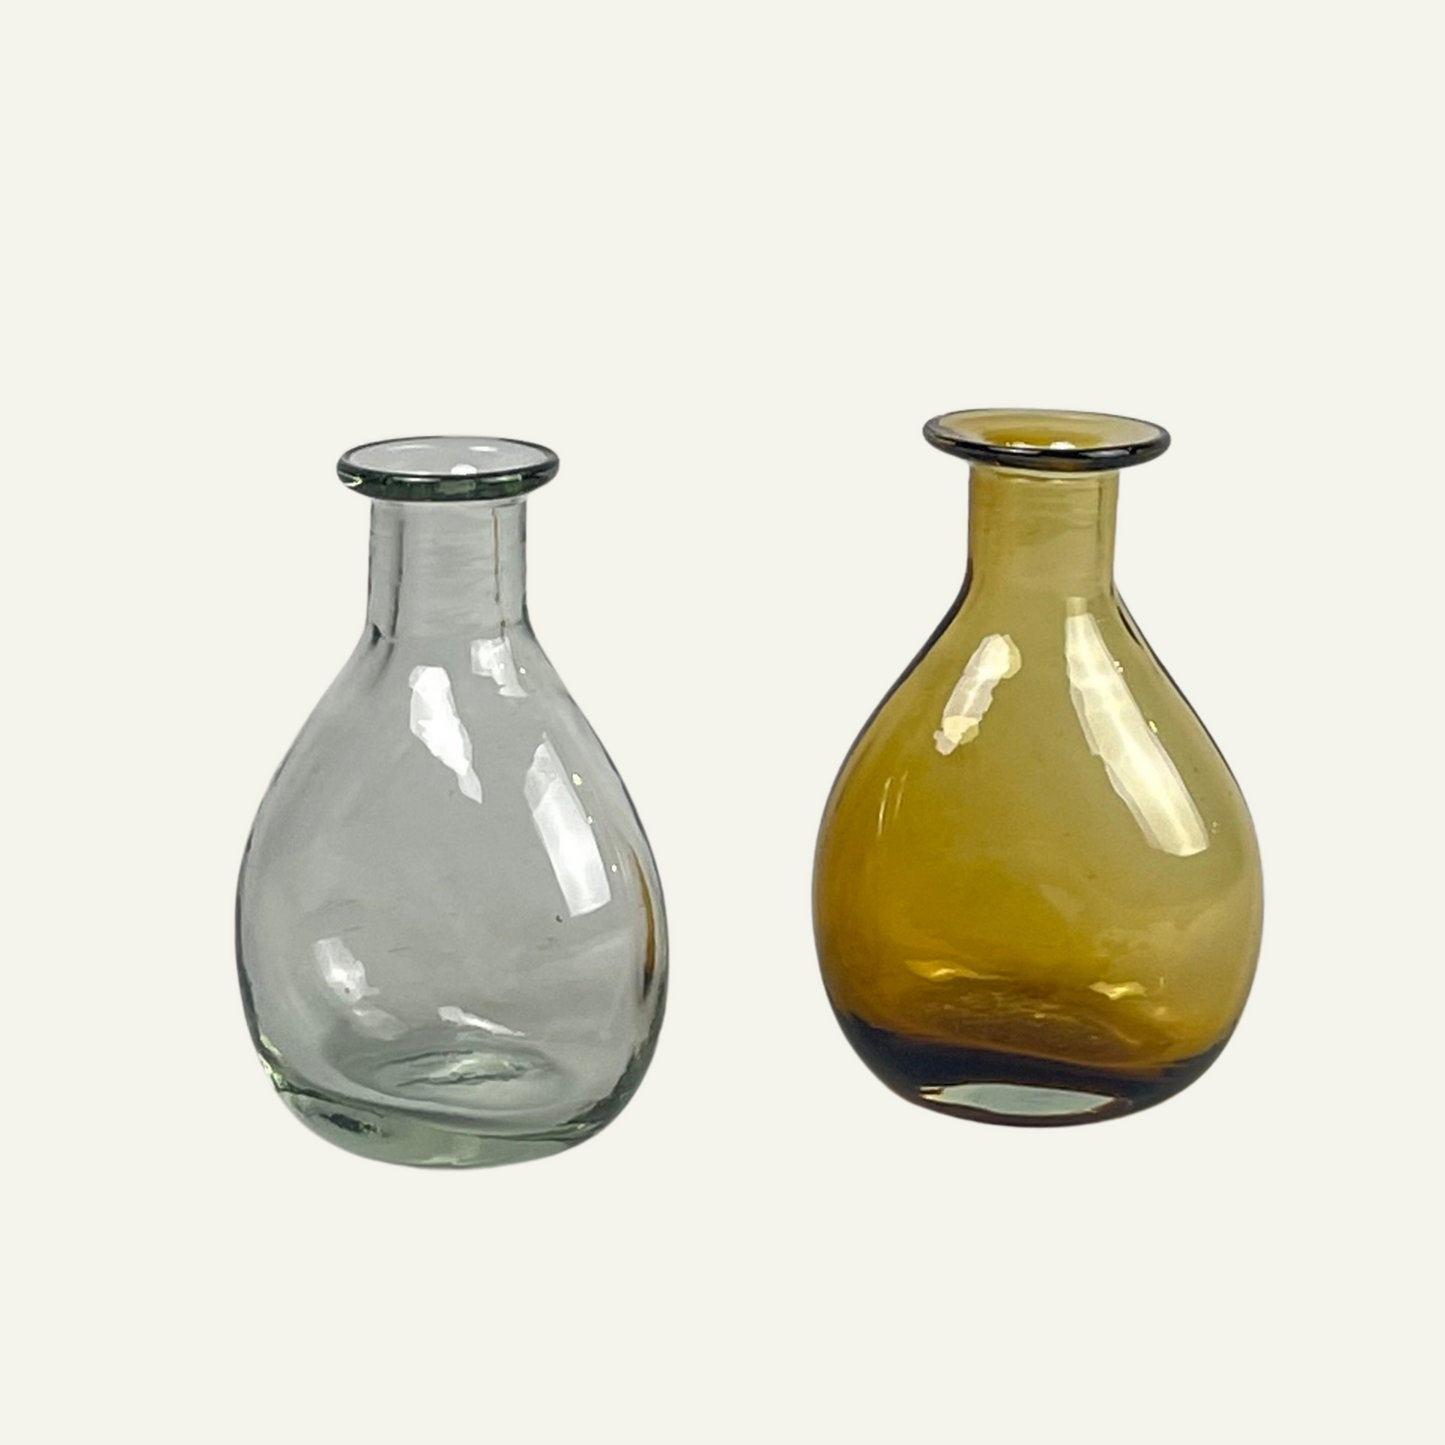 Petits vases soliflores en verre recyclé soufflé - Bitters Co